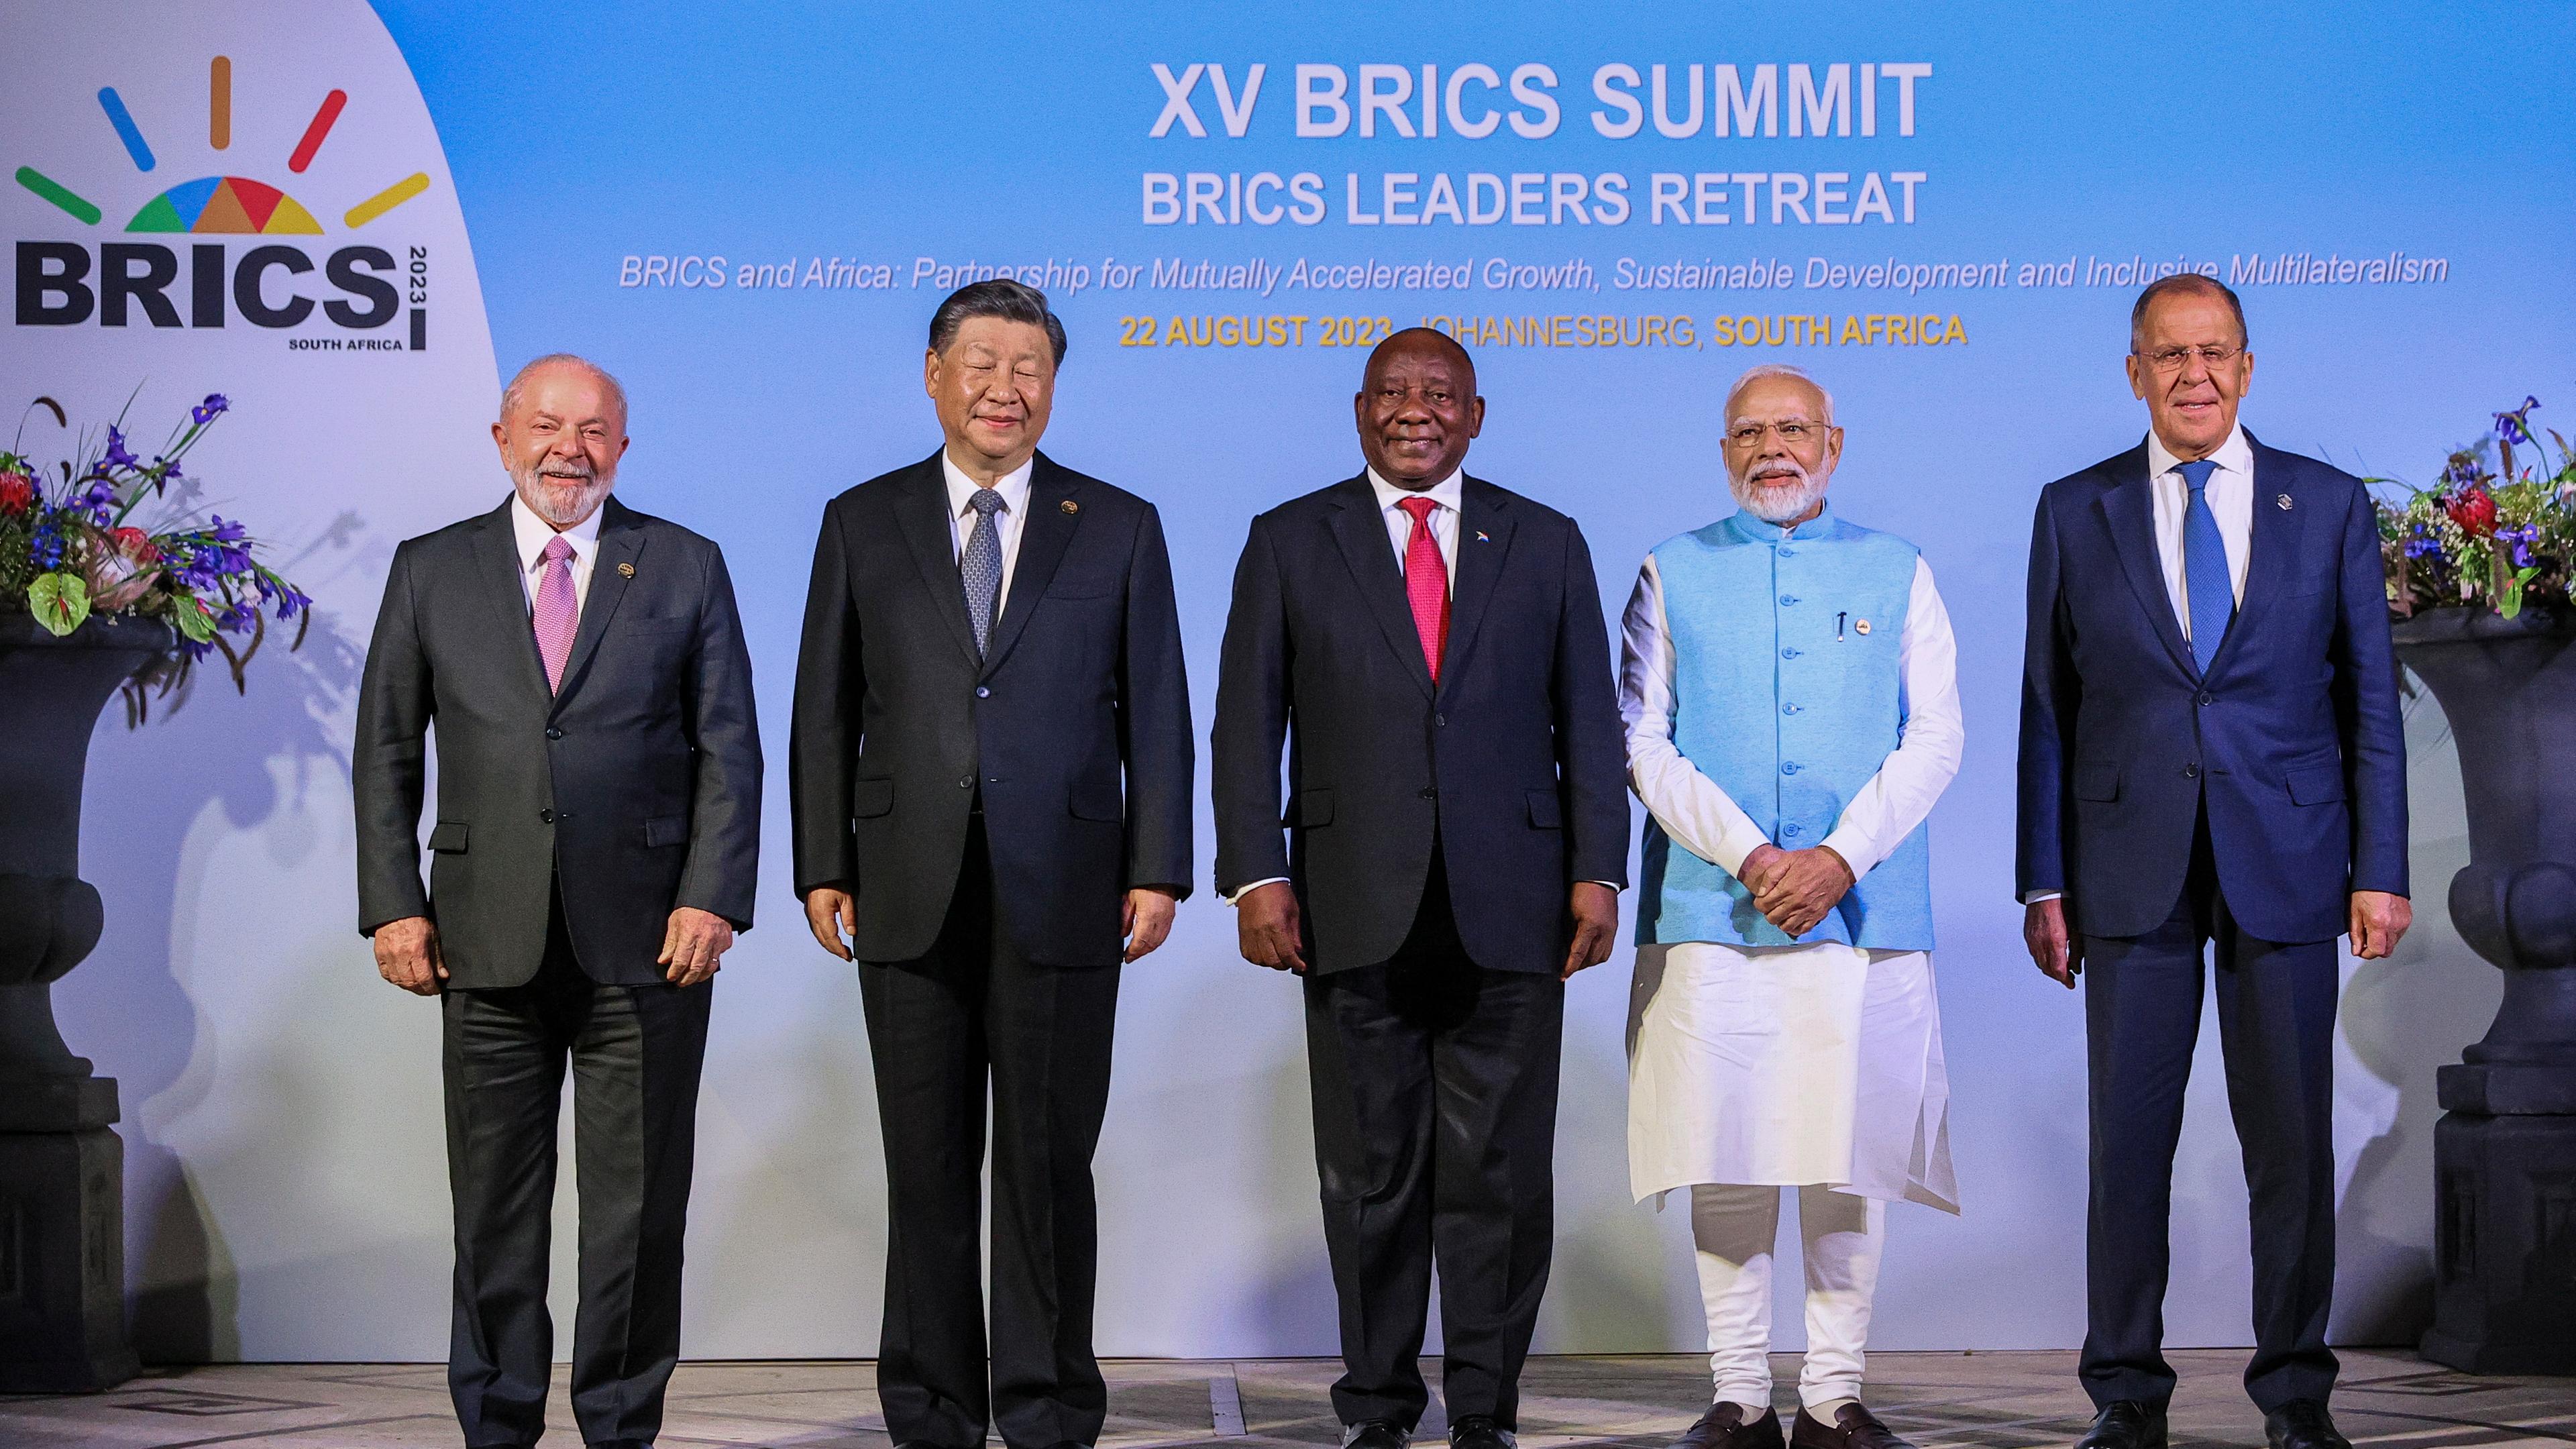 Der brasilianische Präsident Luiz Inacio Lula da Silva, der chinesische Präsident Xi Jinping, der südafrikanische Präsident Cyril Ramaphosa, der indische Premierminister Narendra Modi und der russische Außenminister Sergey Lavrov.